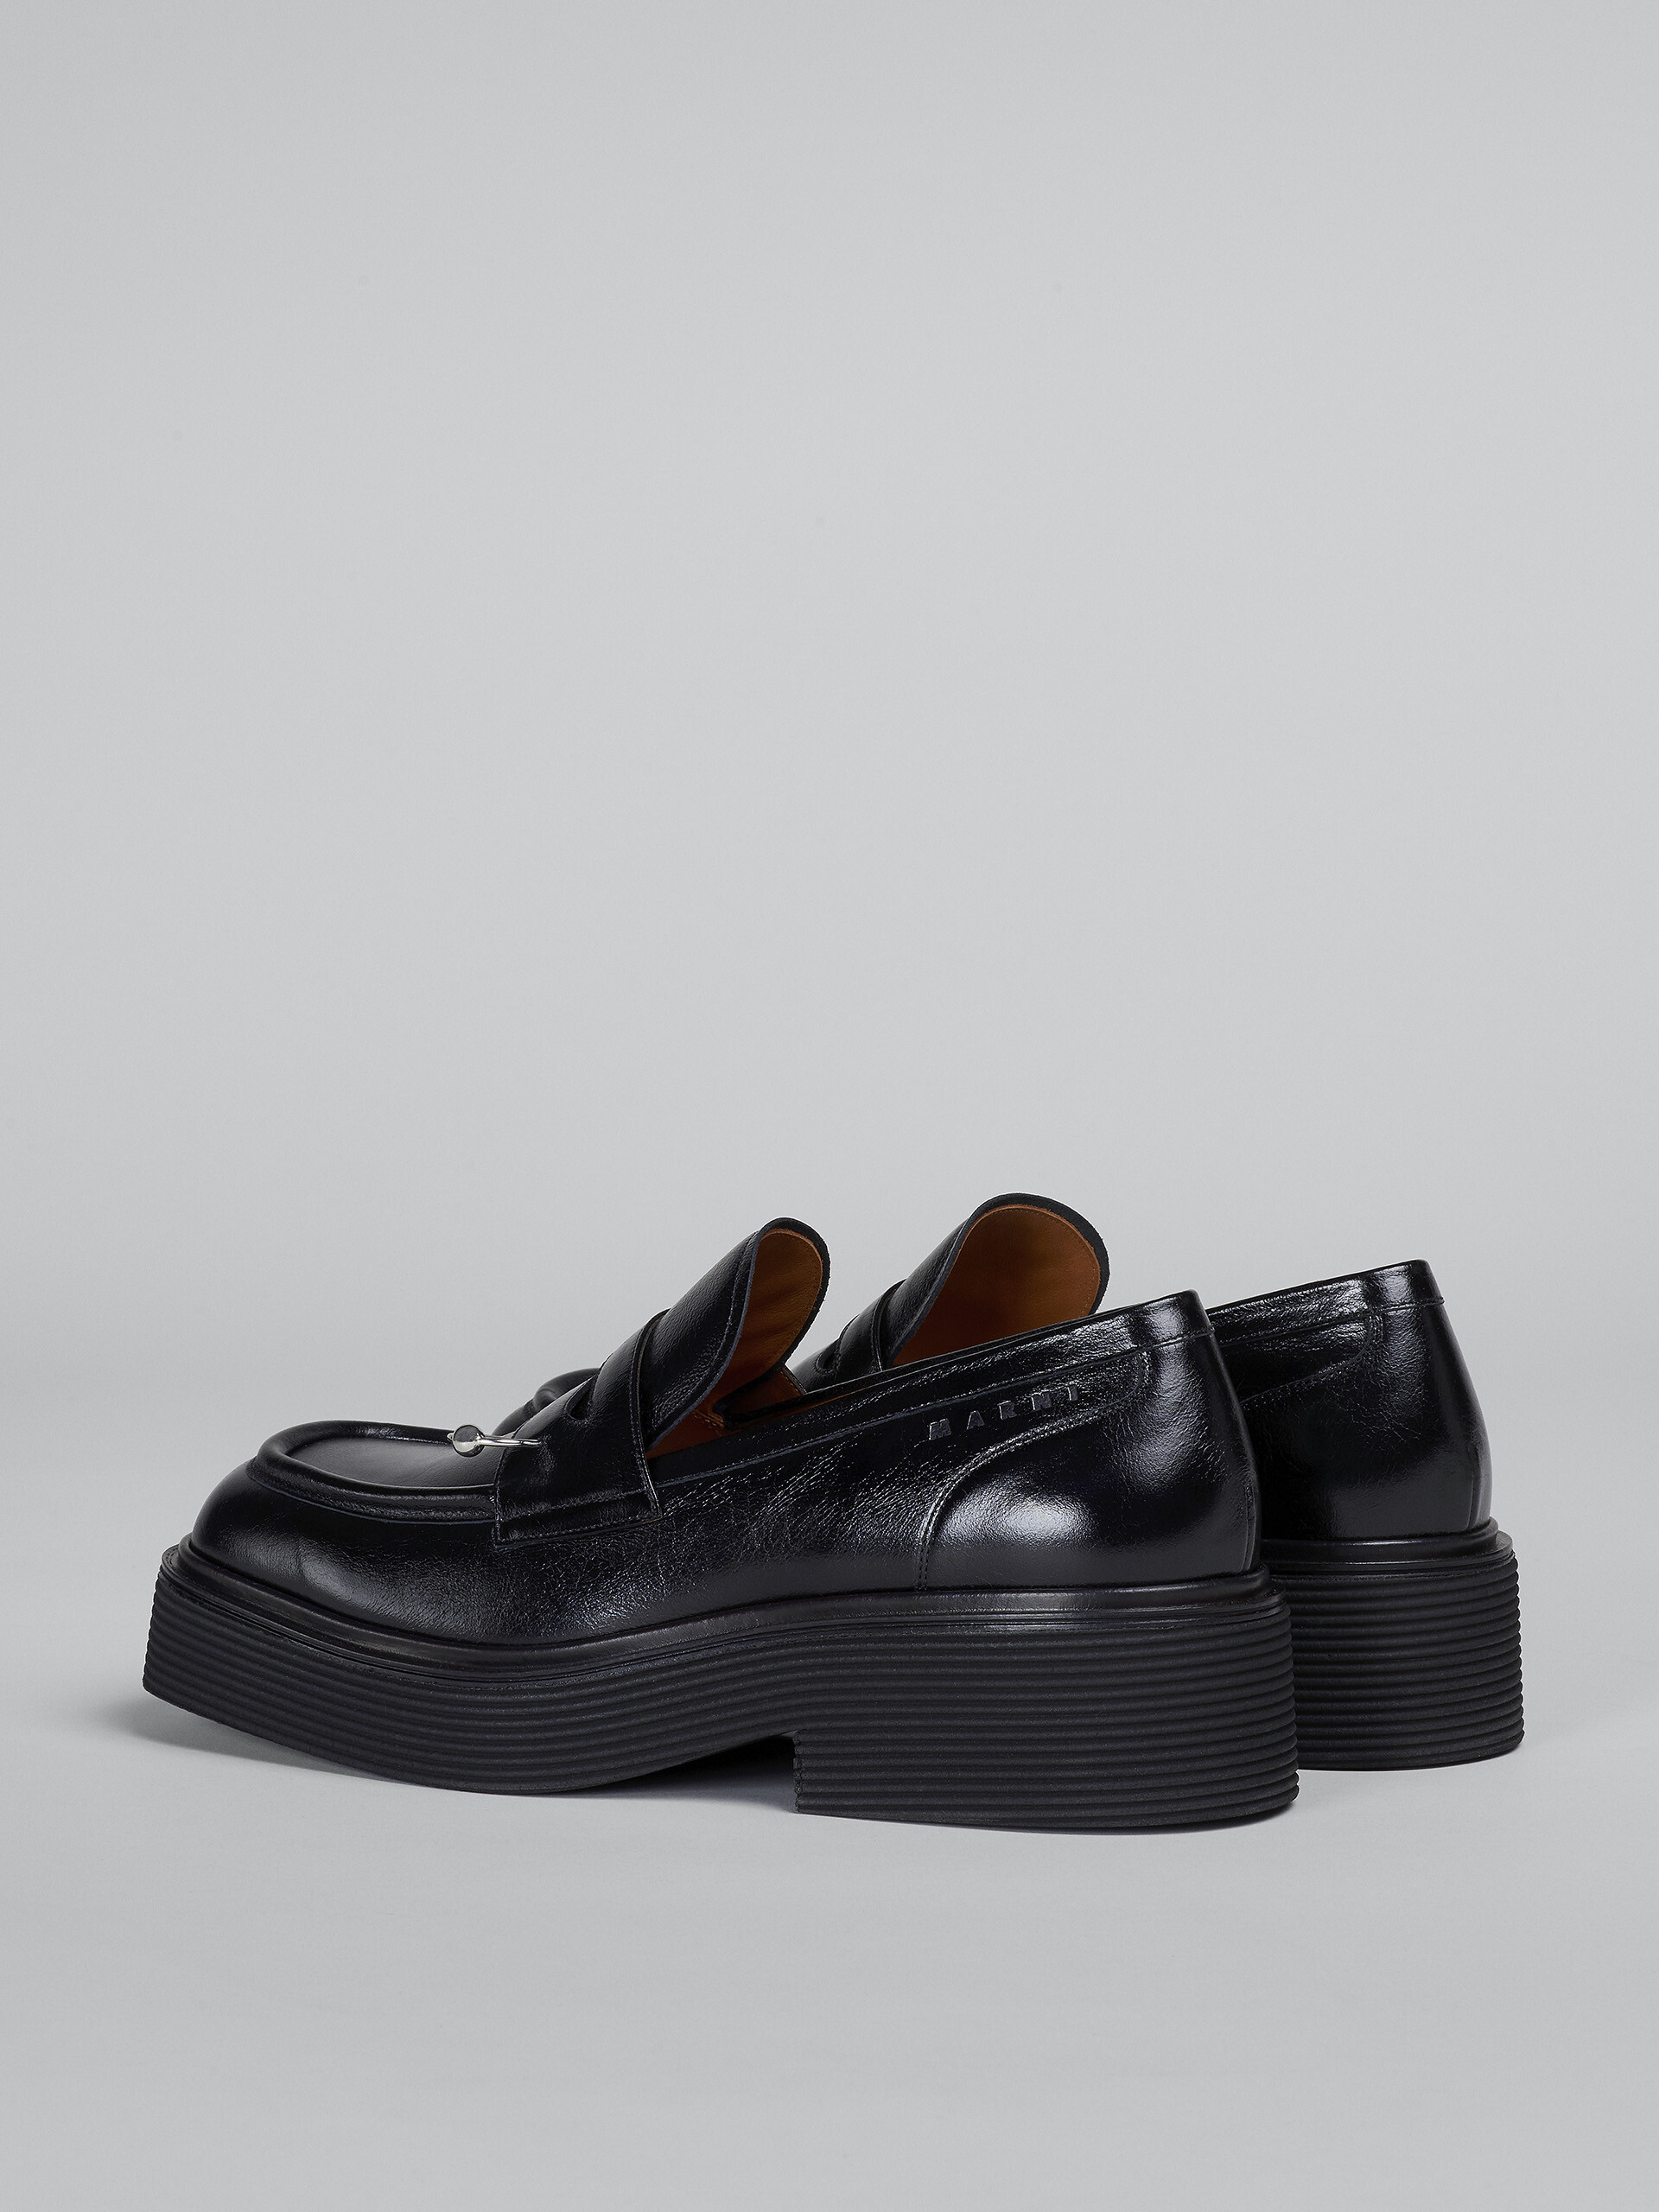 Mocassins en cuir brillant noir - Chaussures à Lacets - Image 3